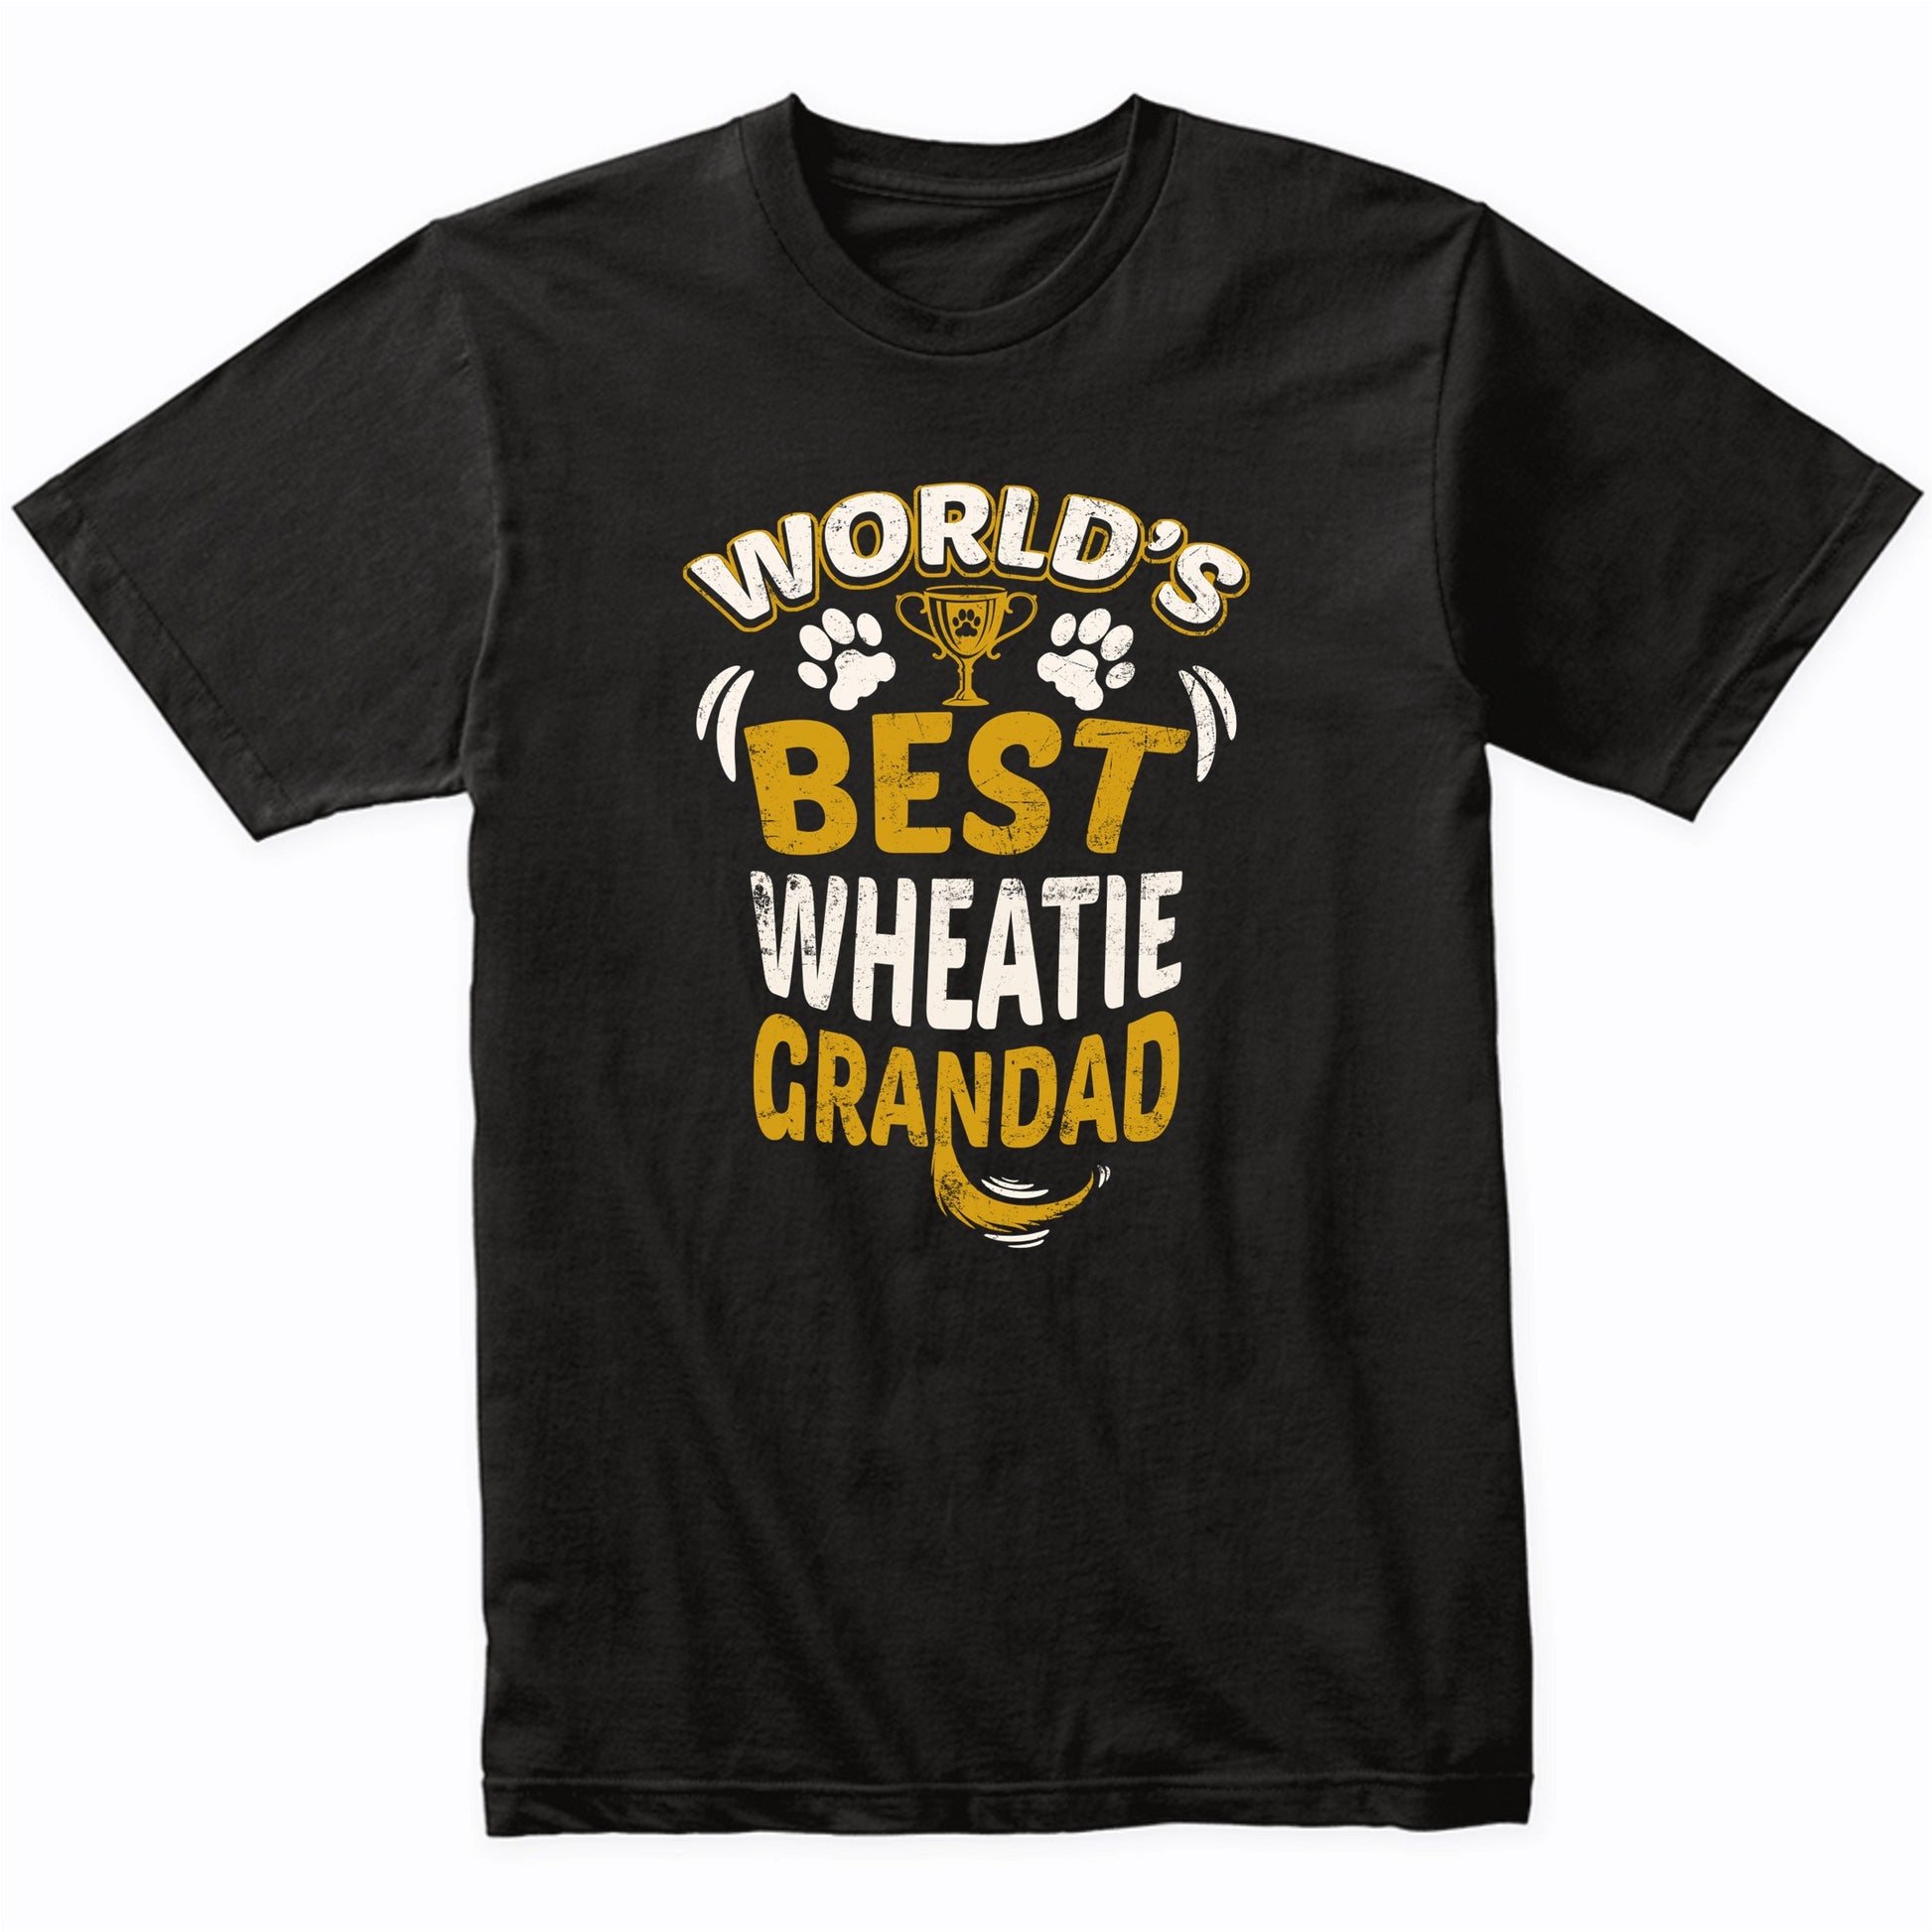 World's Best Wheatie Grandad Graphic T-Shirt